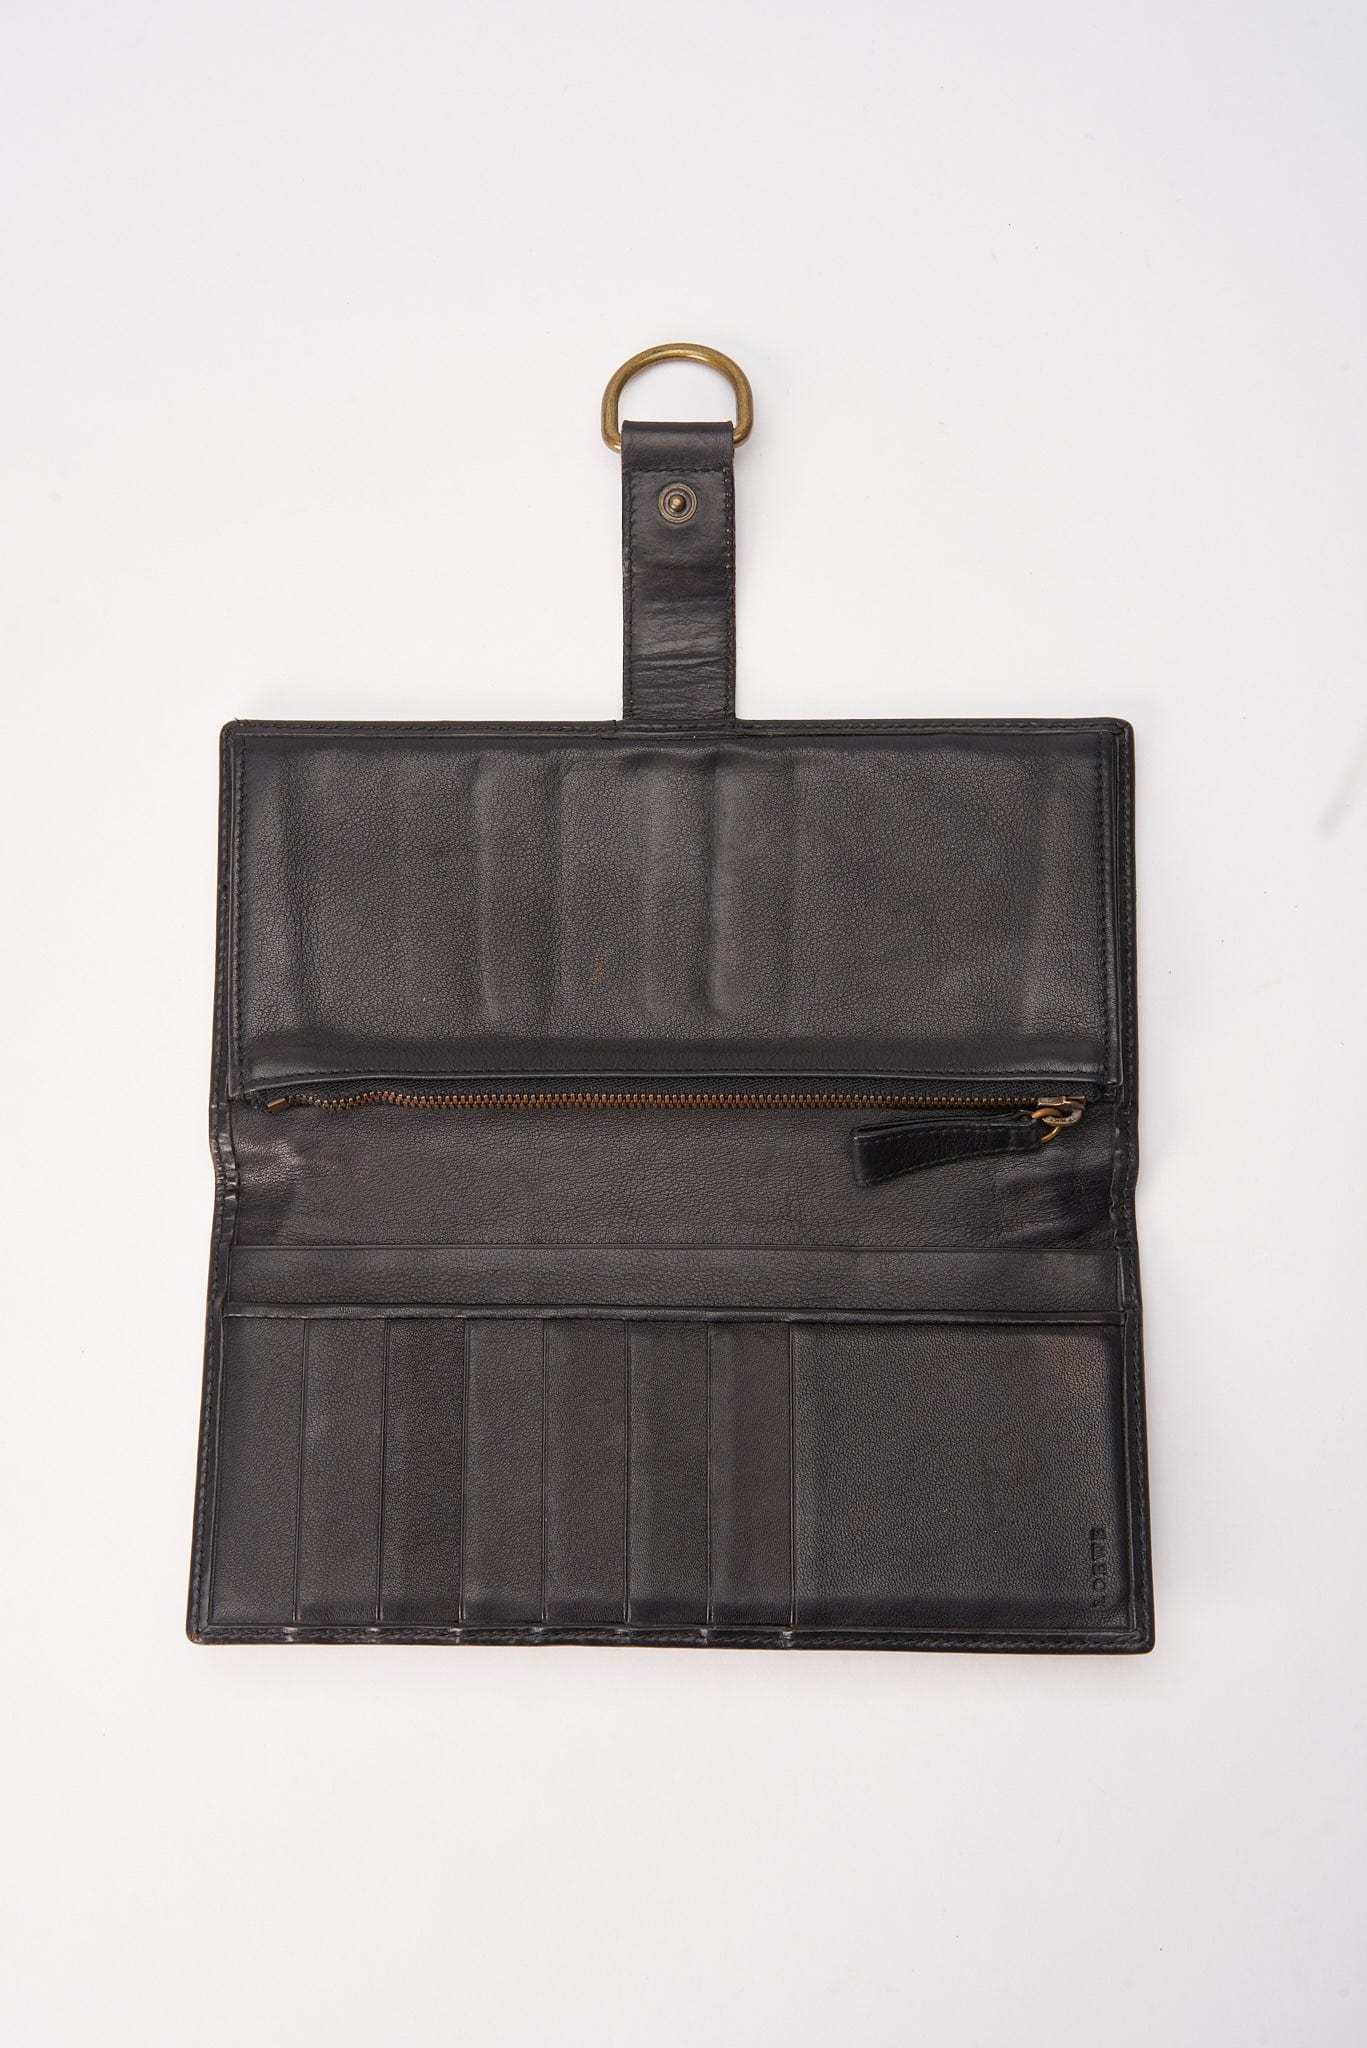 Vintage Loewe Suede and Leather Wallet